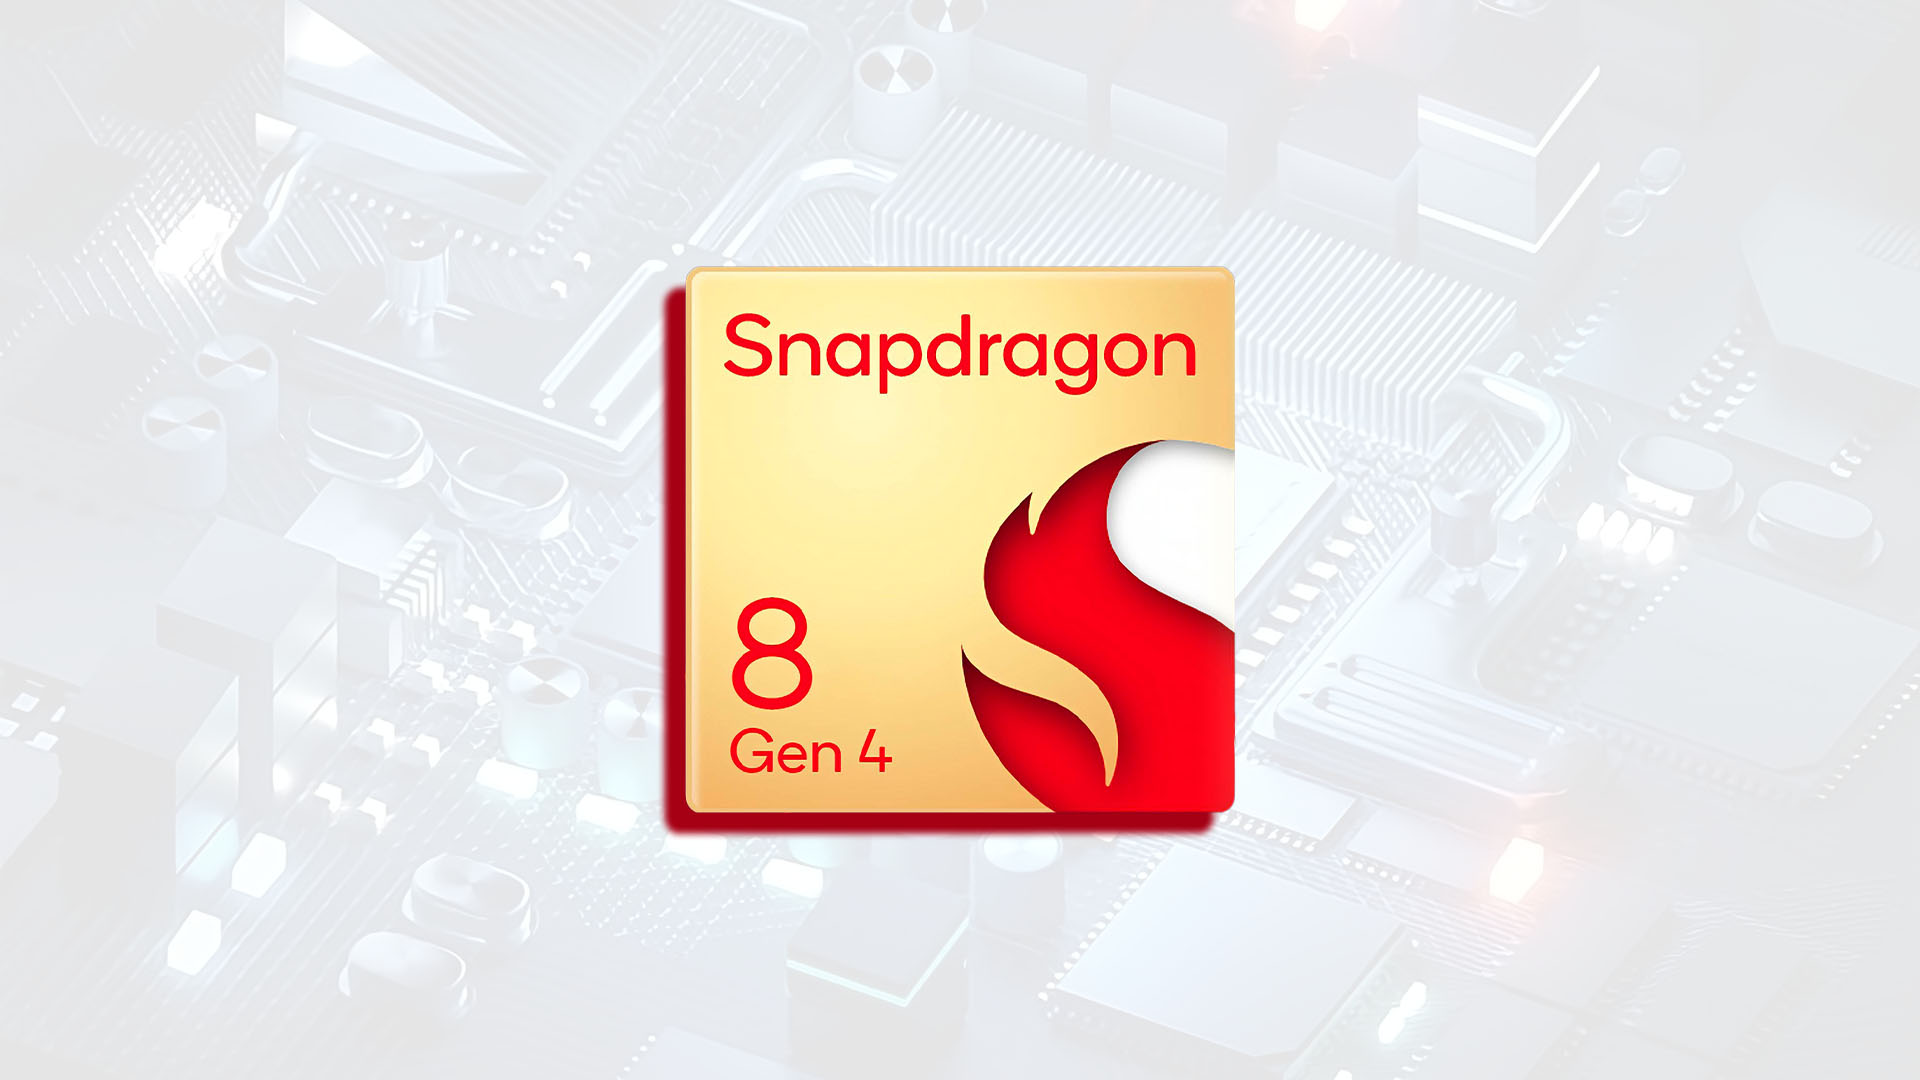 Всего полгода до Snapdragon 8 Gen 4? Первые смартфоны на основе этой платформы ожидаются уже в октябре